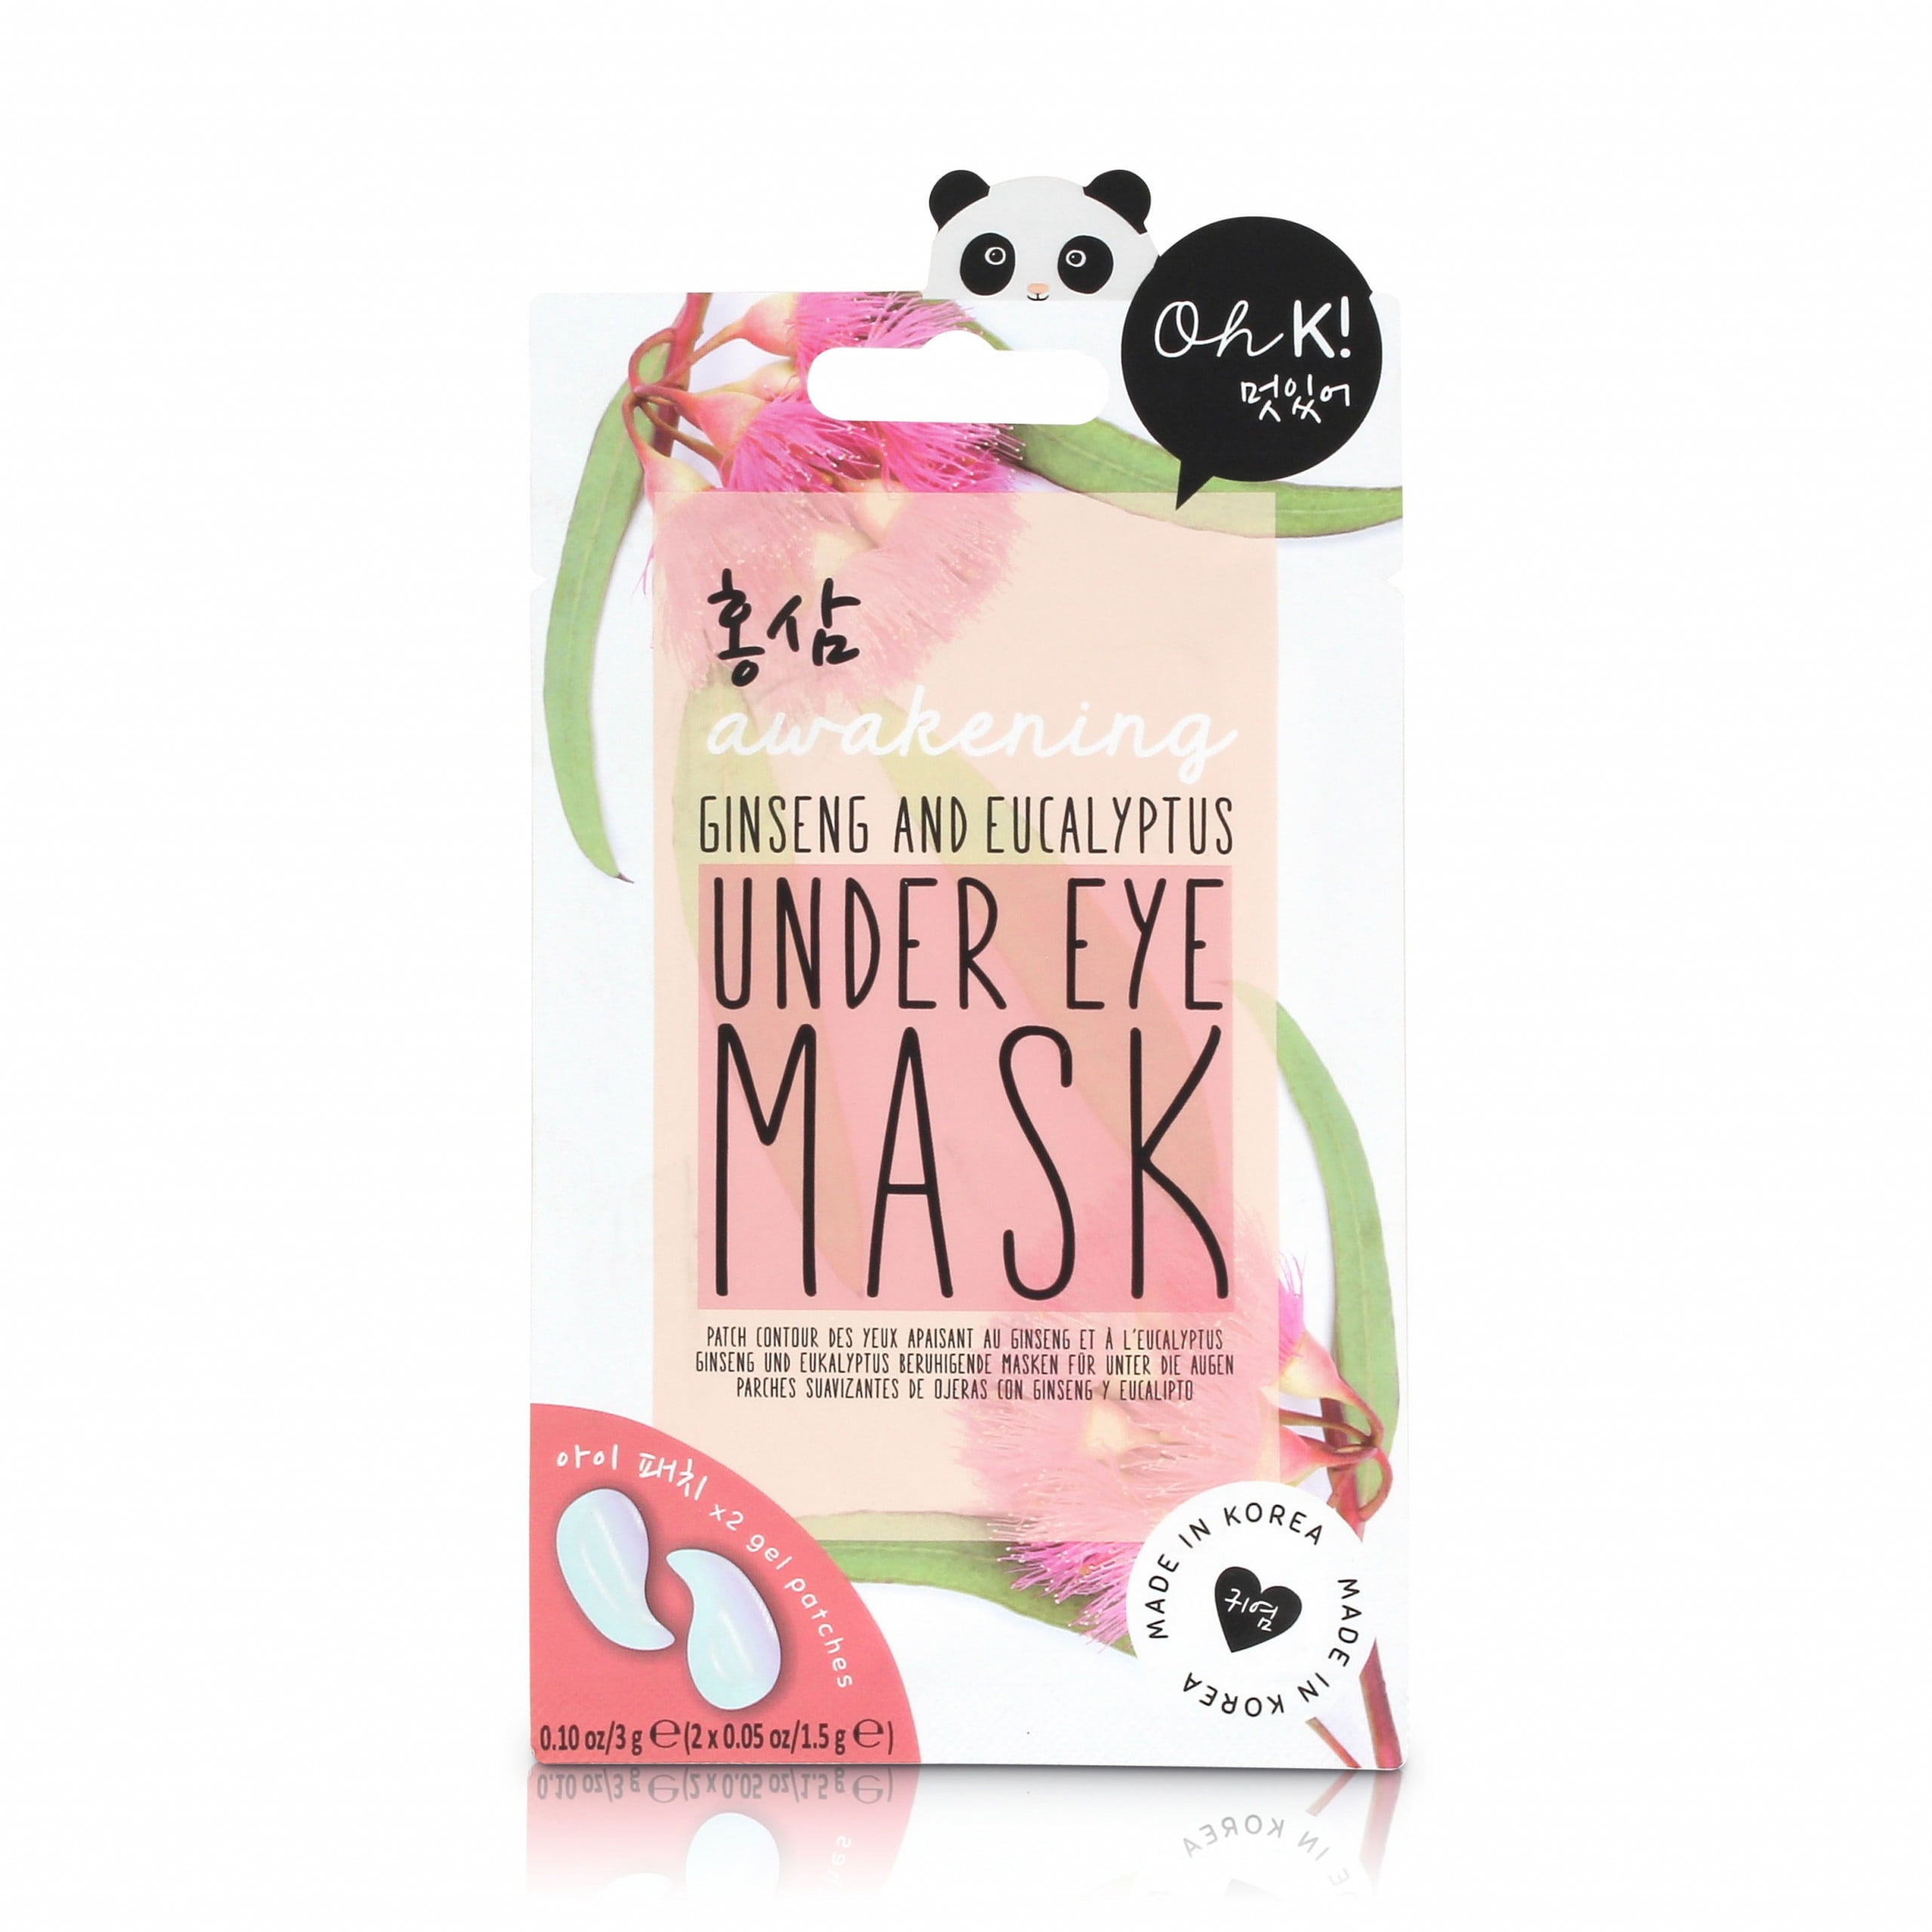 Oh K! Awakening Under Eye Mask – Skincare – Dublin Body Paint